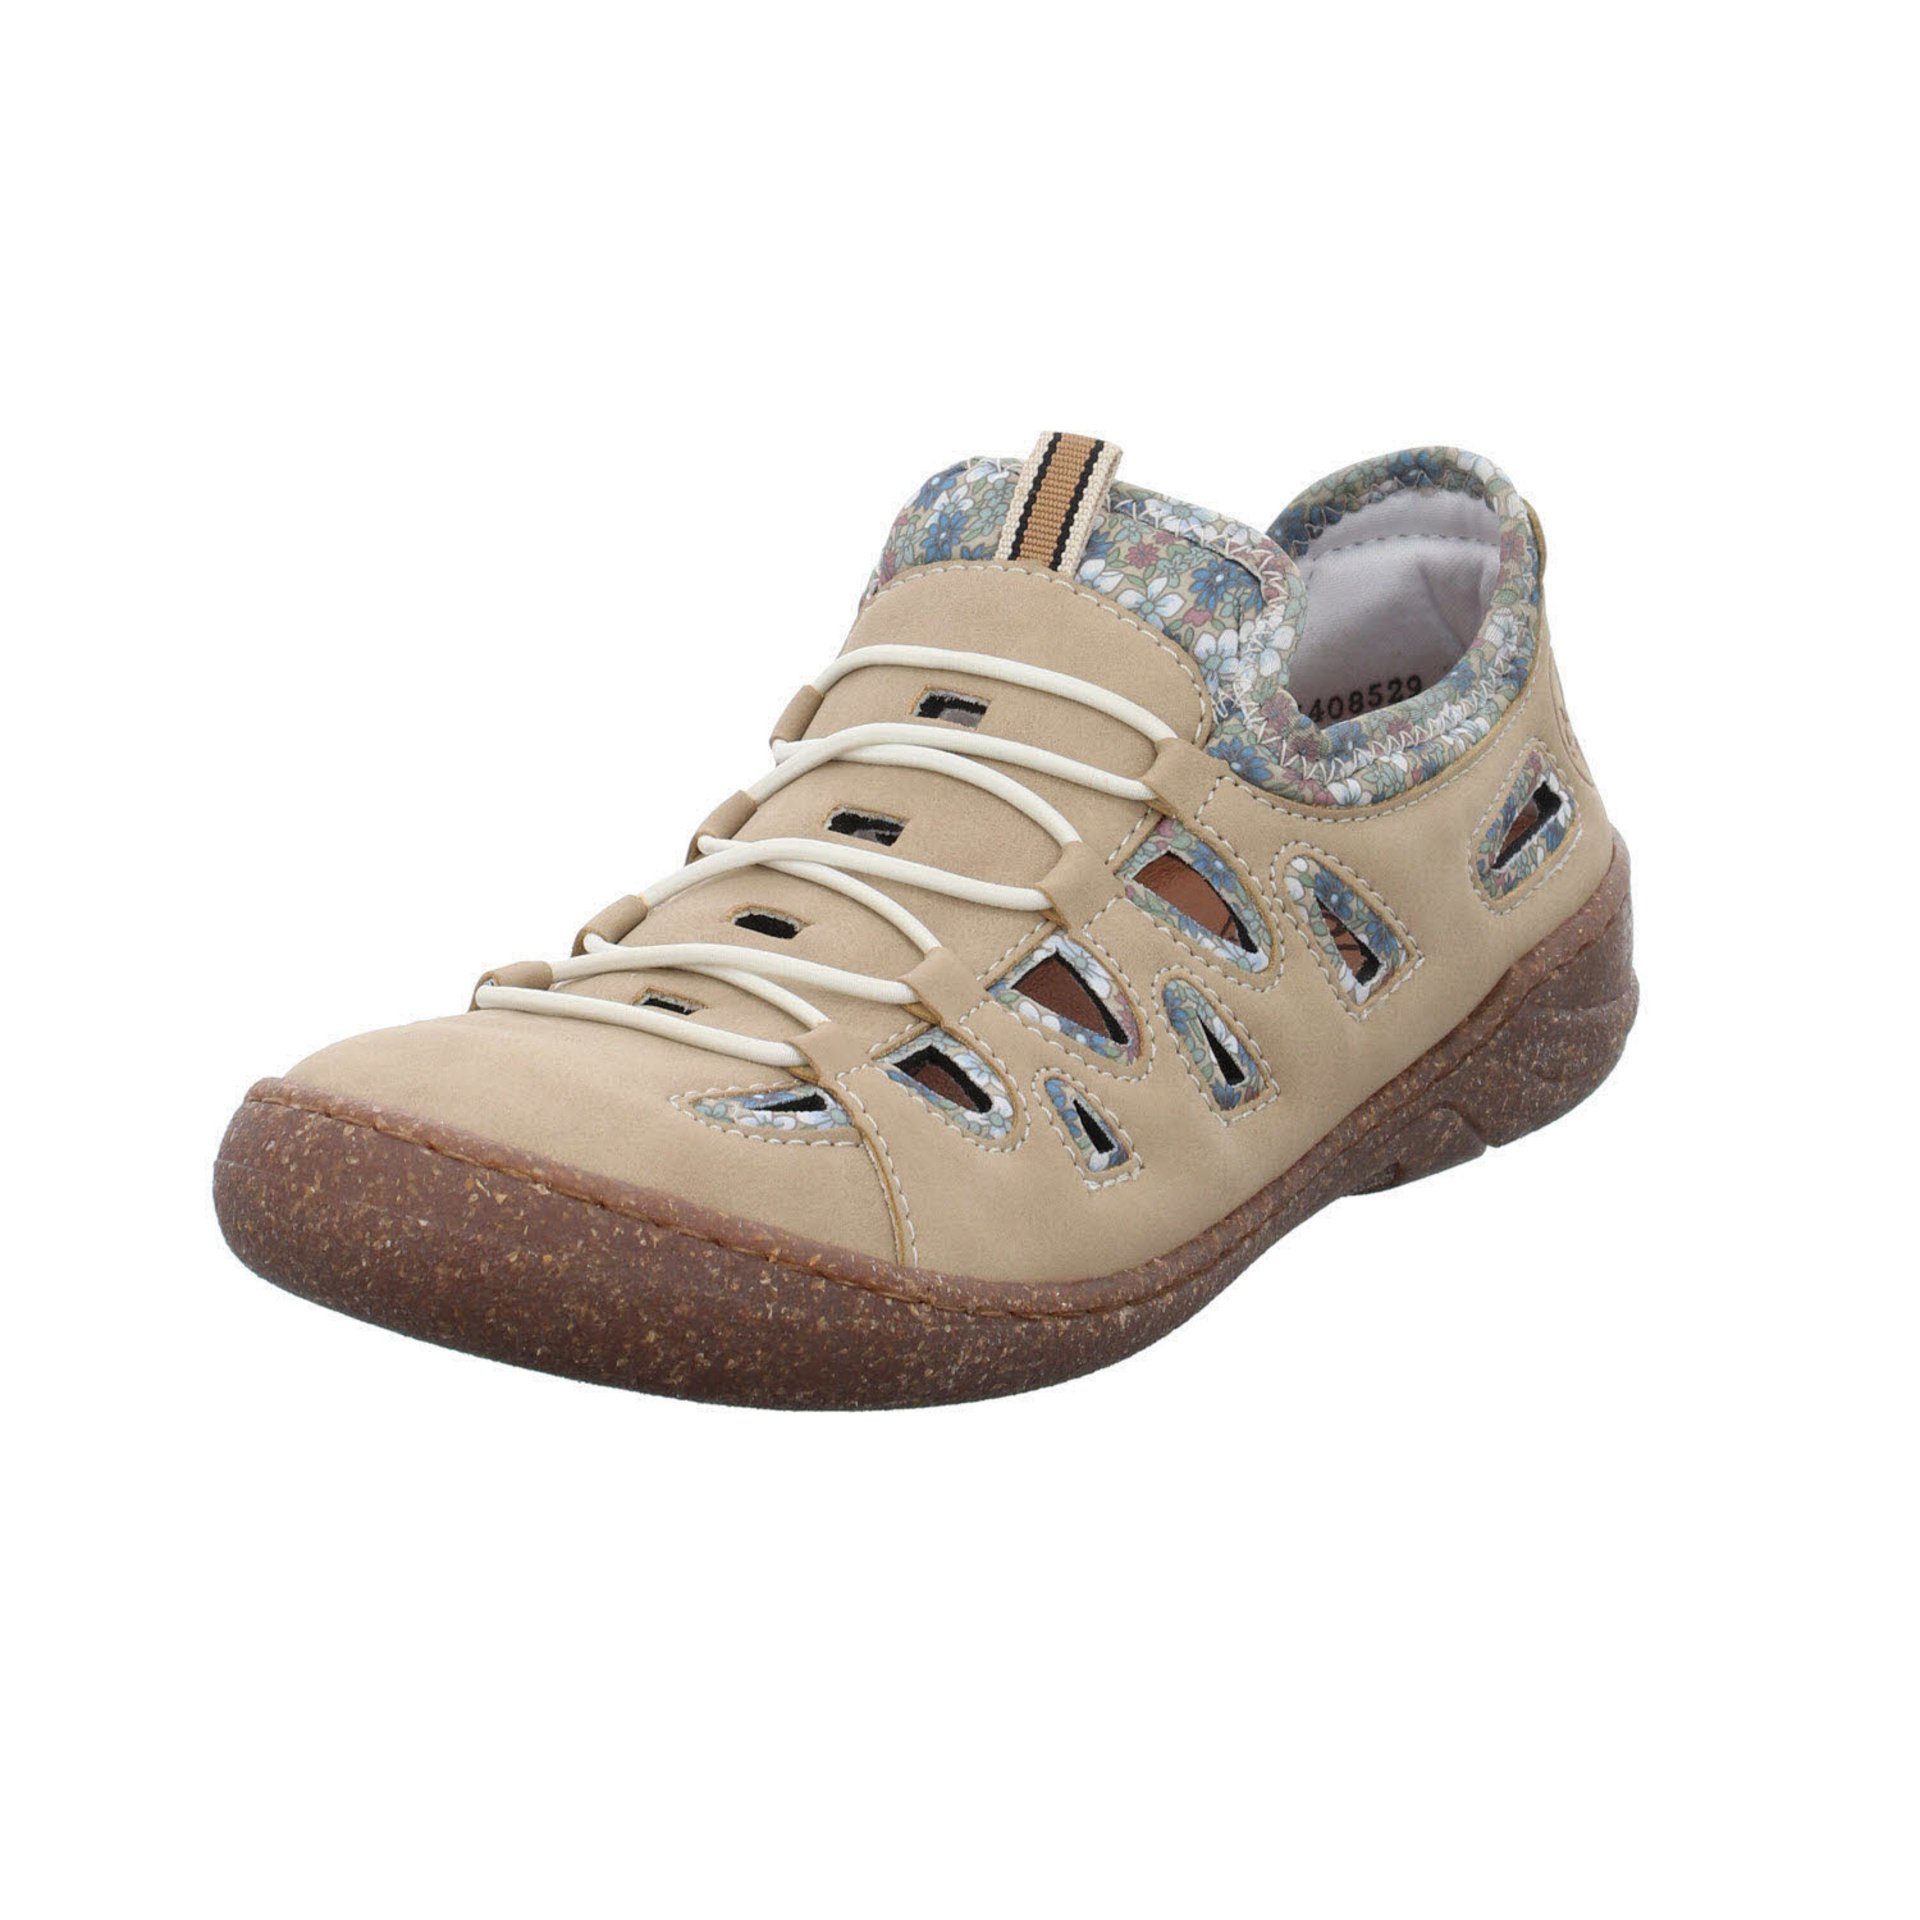 Rieker »Rieker 54551« Sandale online kaufen | OTTO